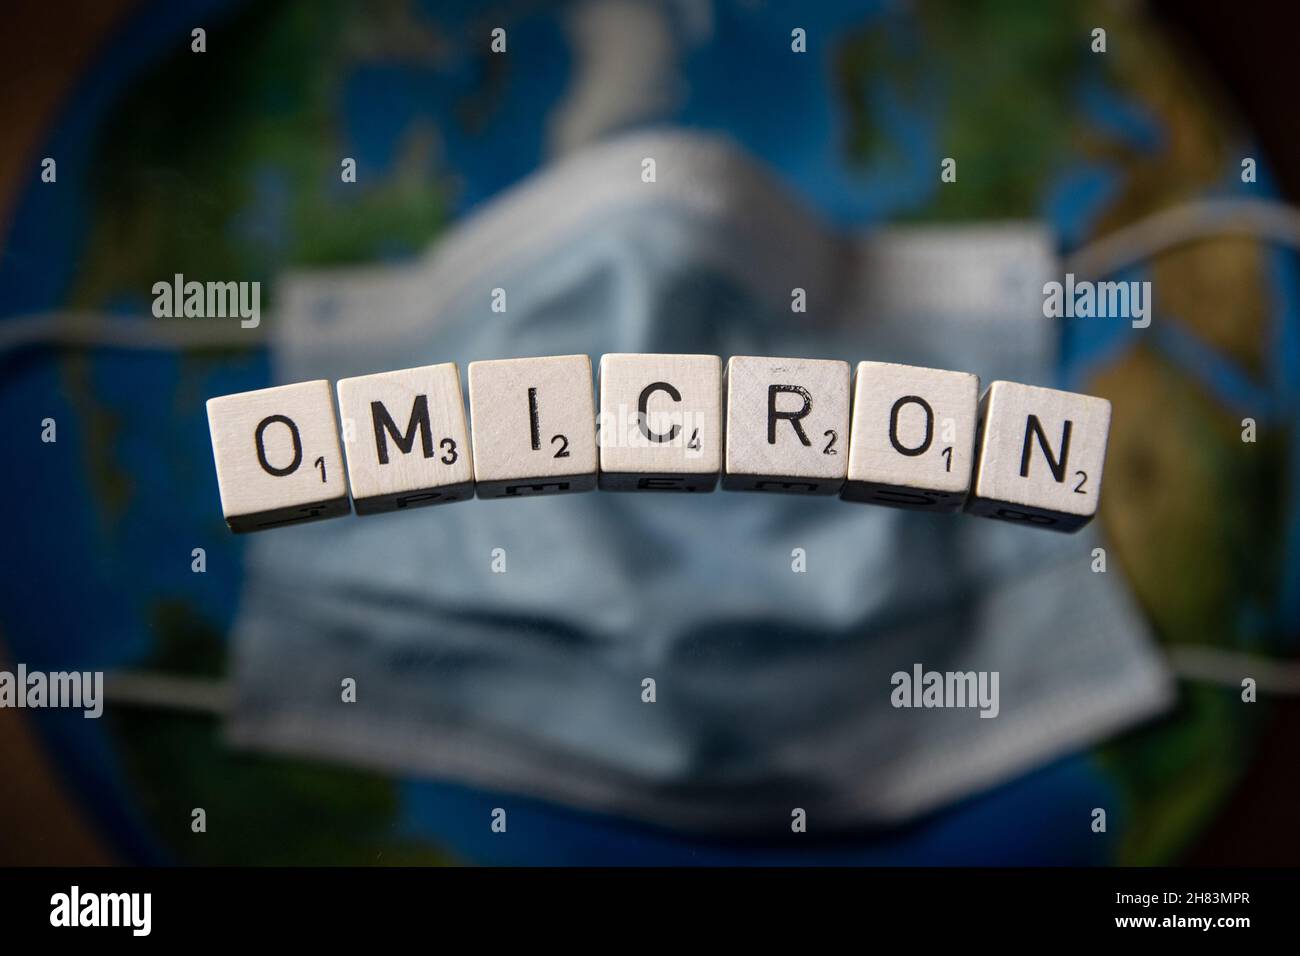 Les lettres OMICRON orthographient Omicron, le nom que l'OMS a donné à une nouvelle variante de Covid-19 pays du monde entier, introduit de nouveaux voyages Banque D'Images